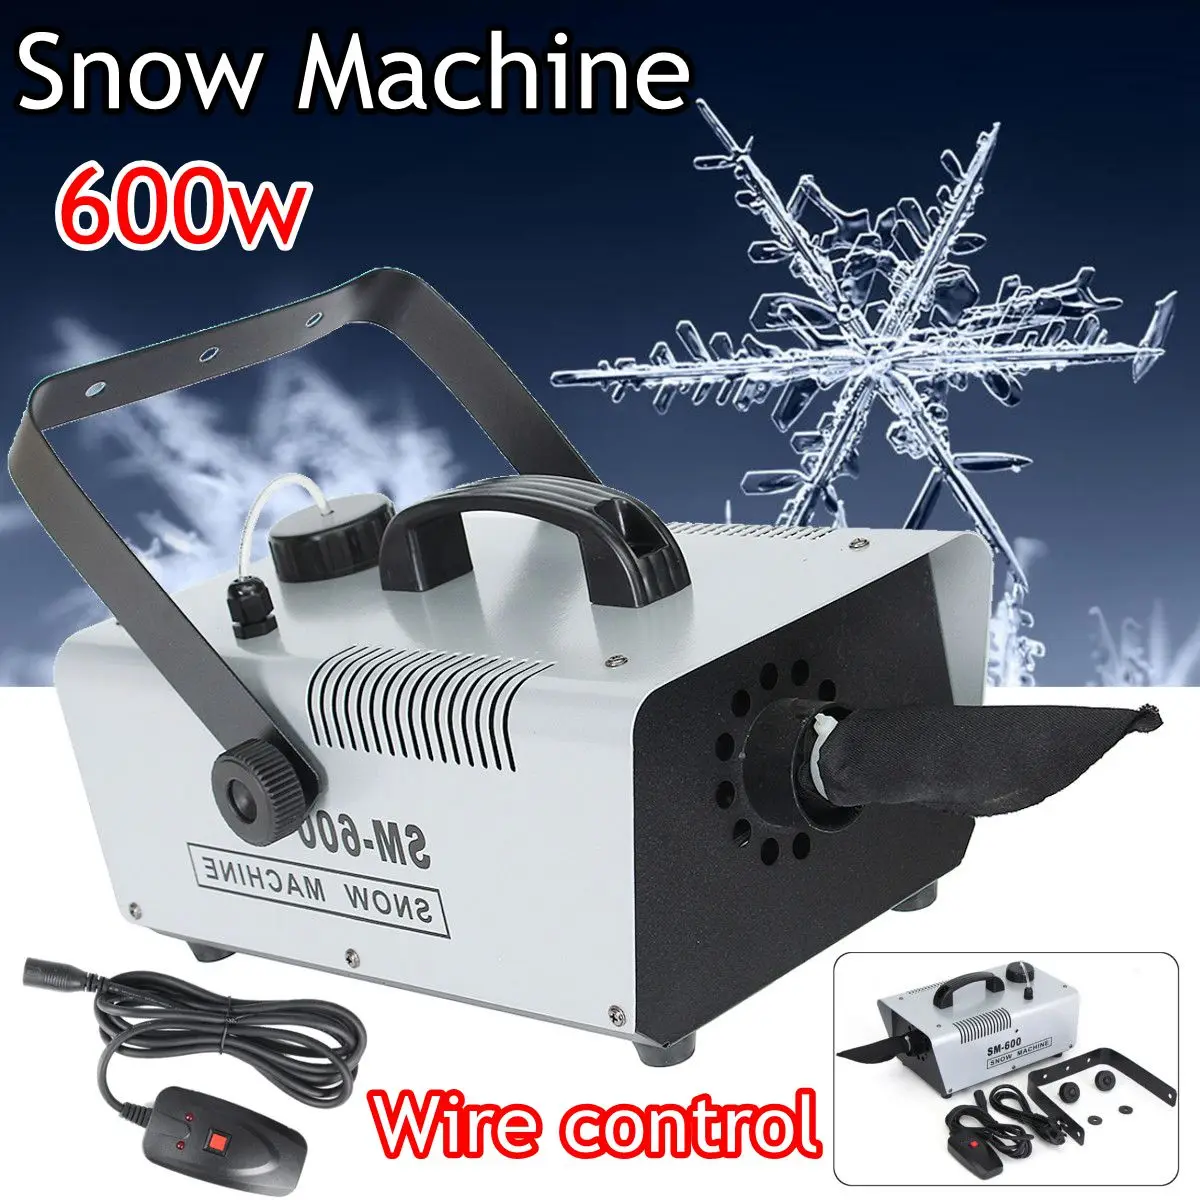 110 В/220 В 600 Вт мини Flurry снег машина сценический эффект + проводной пульт дистанционного управления для праздничного шоу сцены